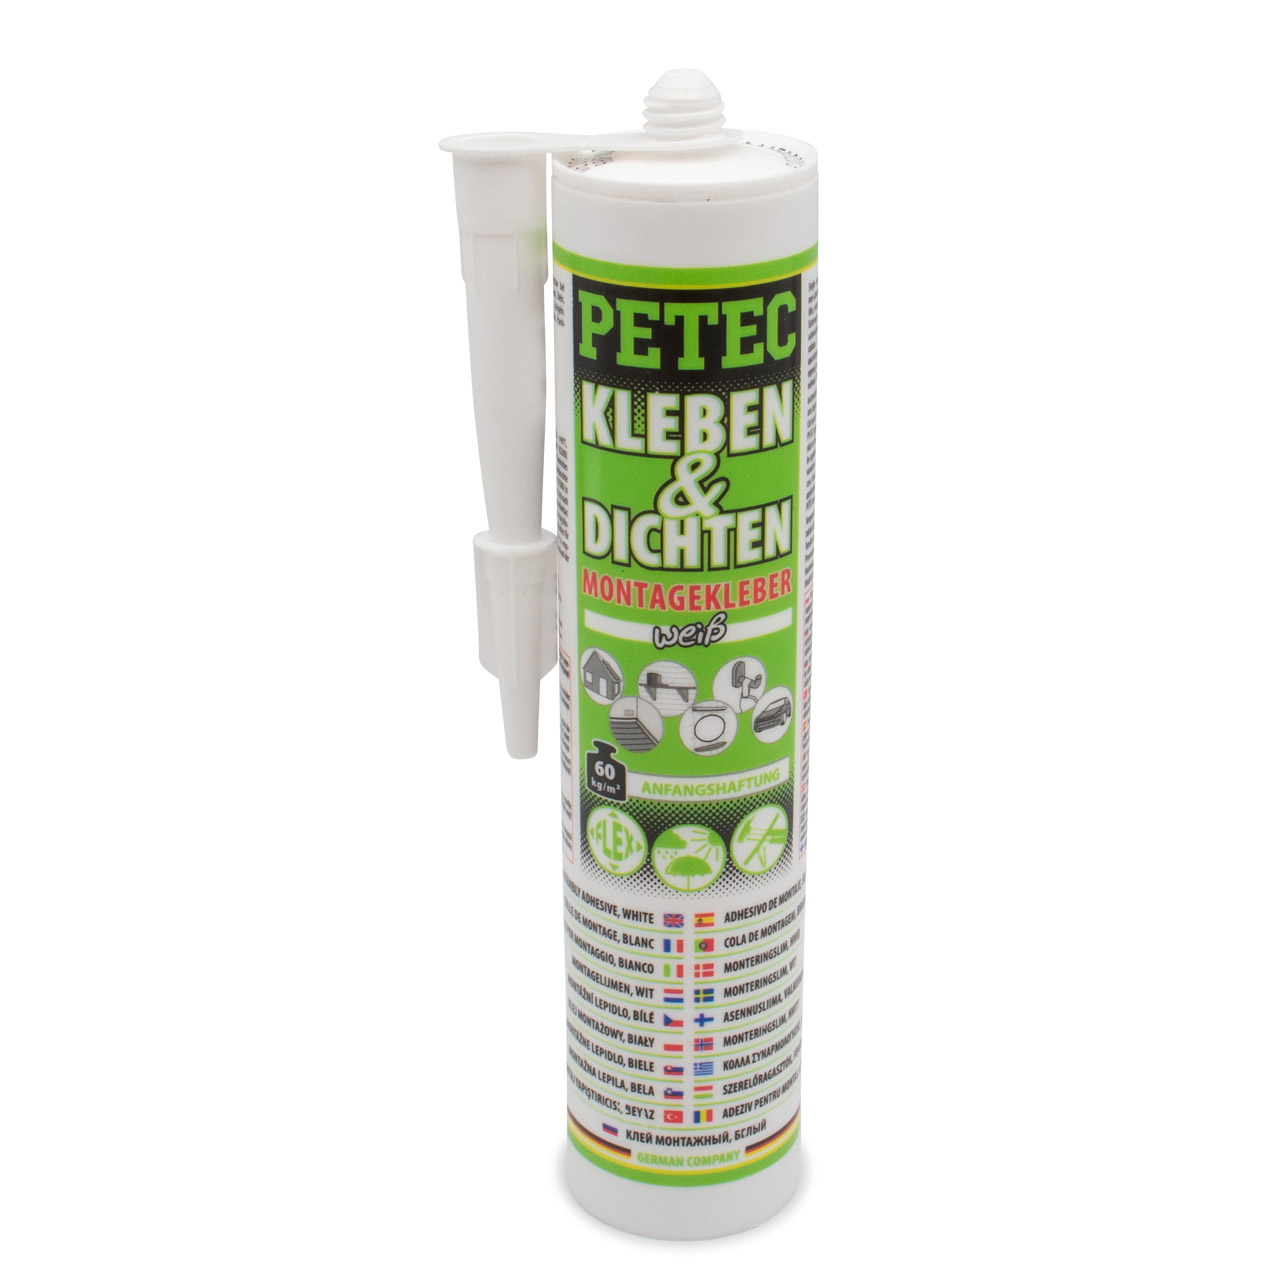 PETEC 94529 Kleben & Dichten Montagekleber Kleber Klebstoff elastisch weiß Kartusche 290ml